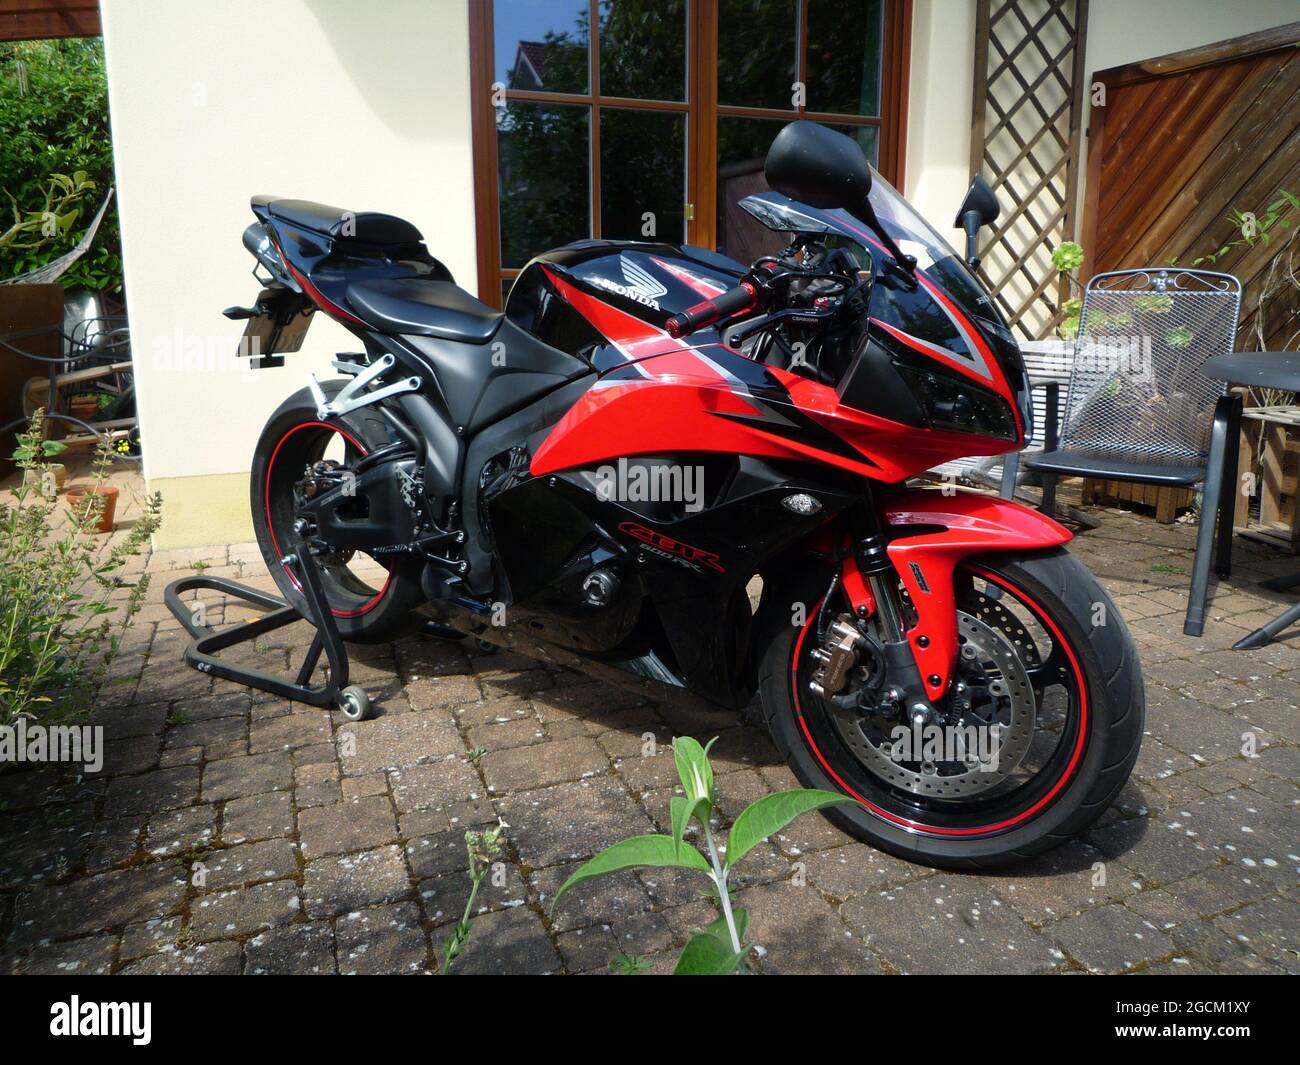 Motorrad Honda CBR600RR auf der Terasse Foto Stock